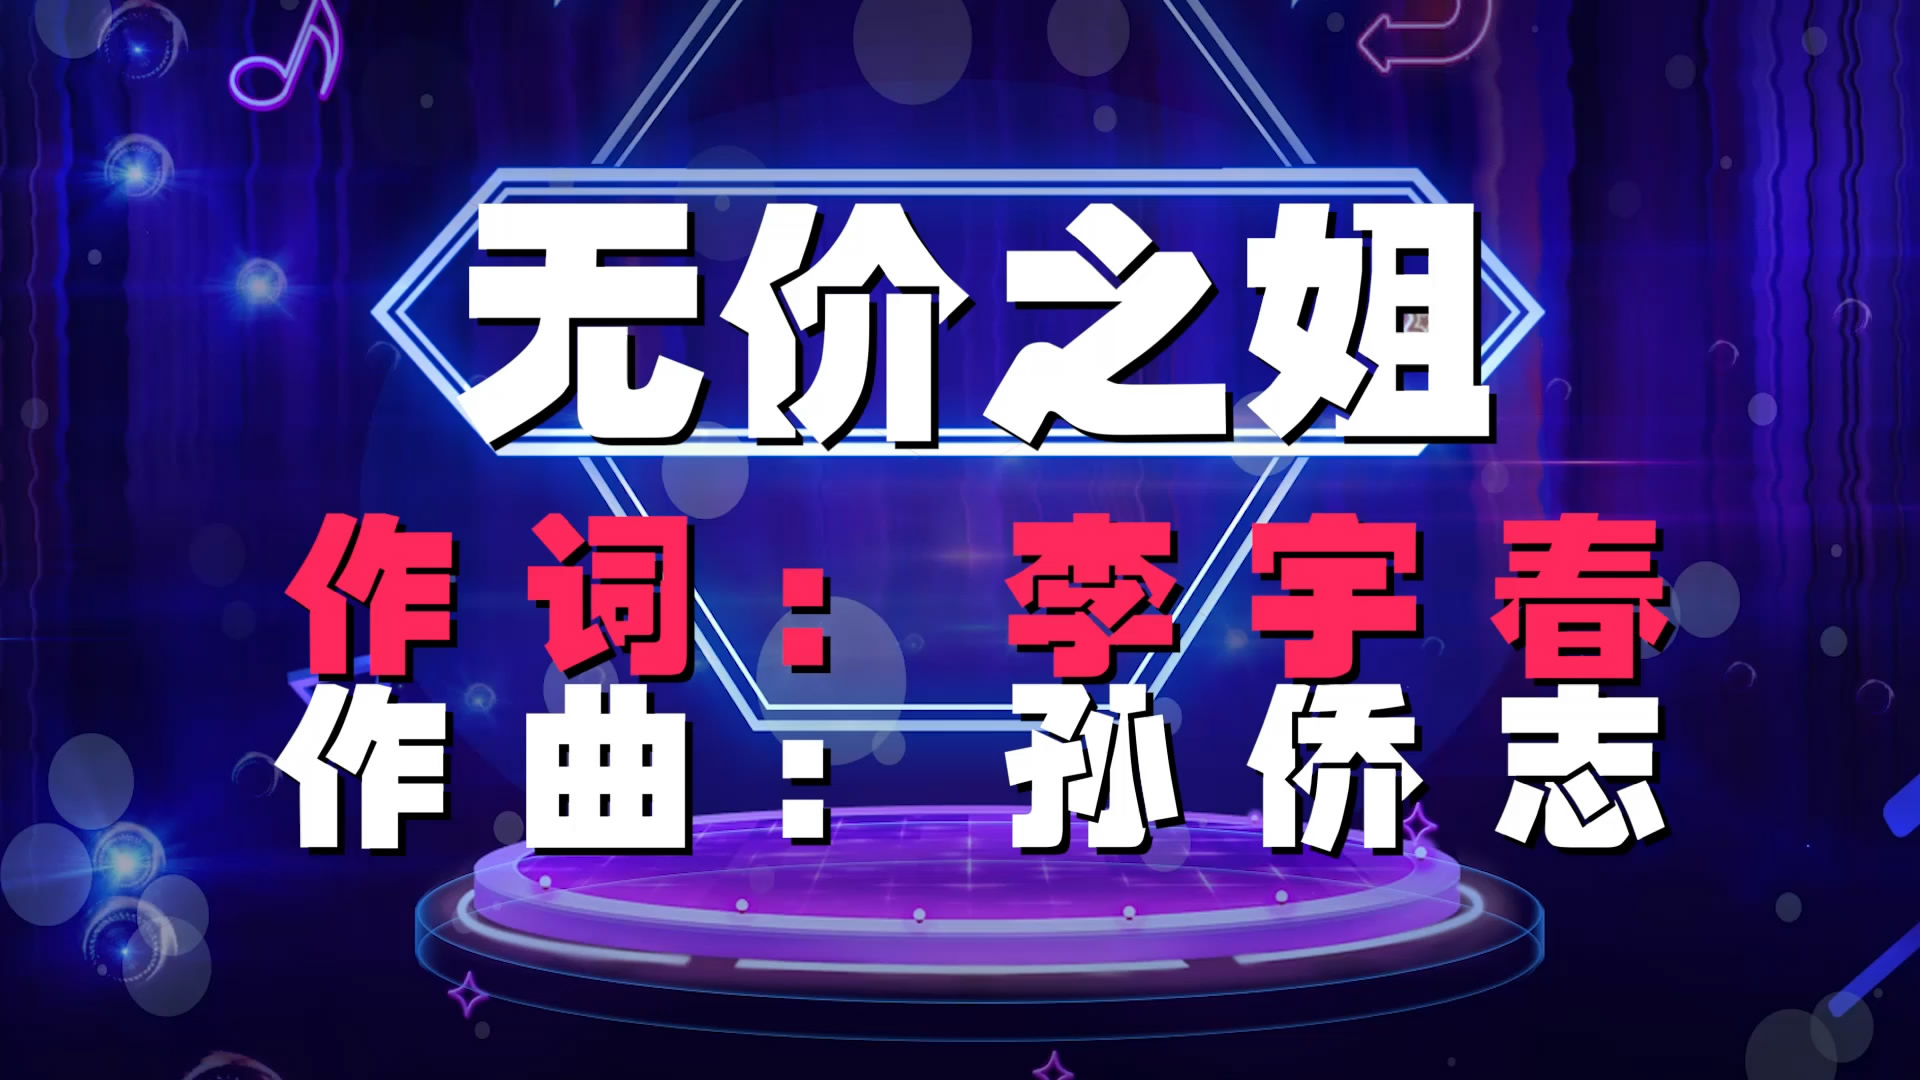 无价之姐 动感字幕版炫酷街舞流行歌舞LED背景大屏幕视频素材TV